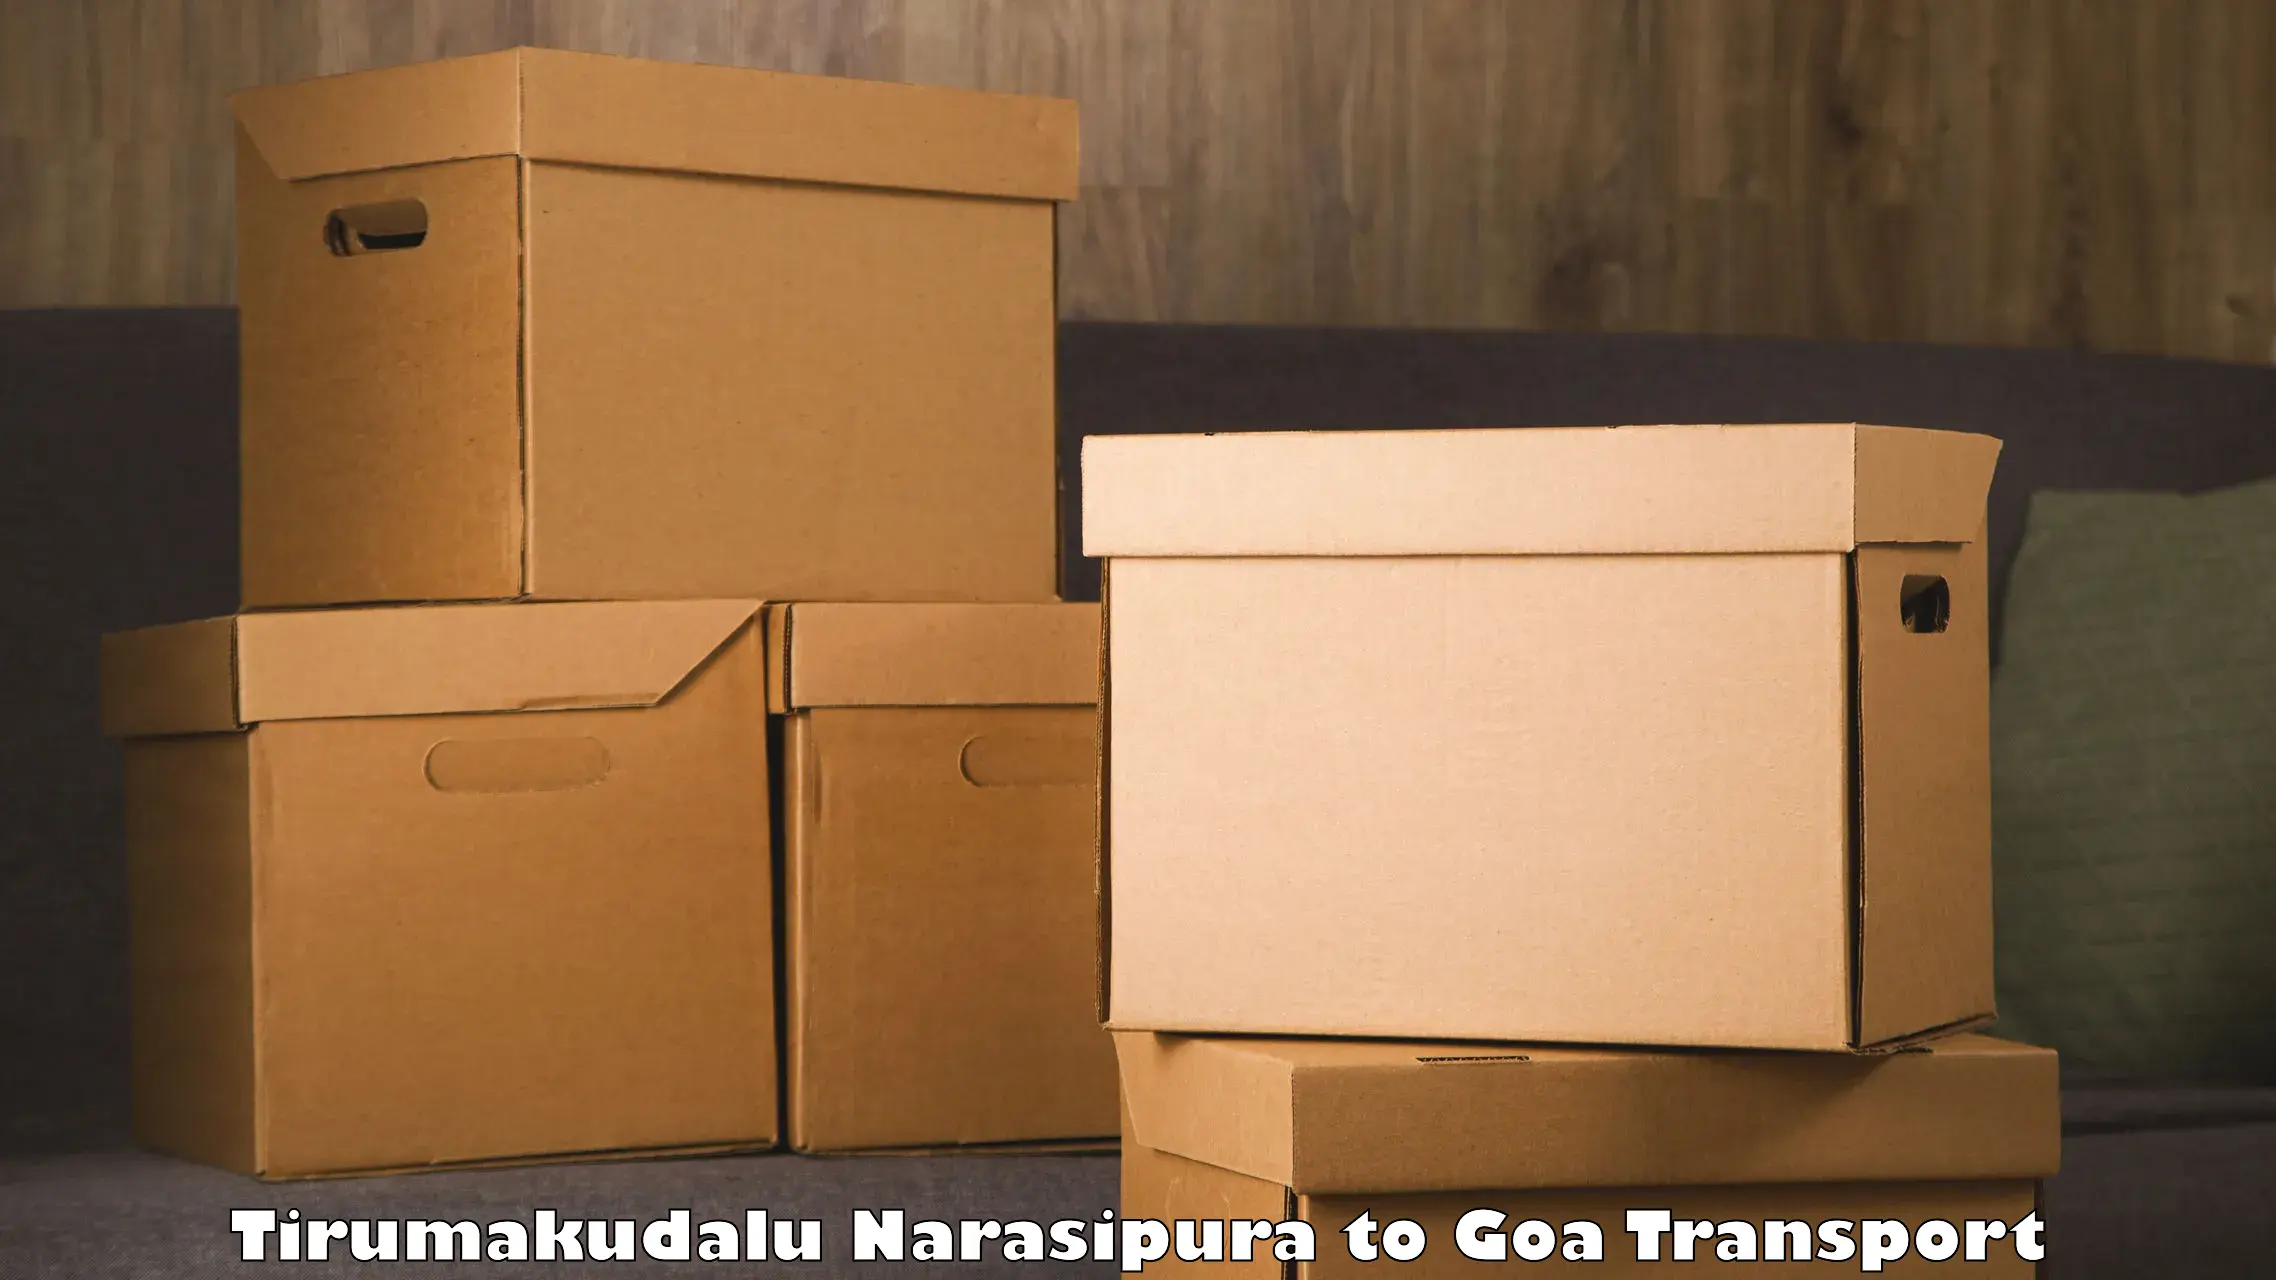 Online transport service Tirumakudalu Narasipura to Ponda